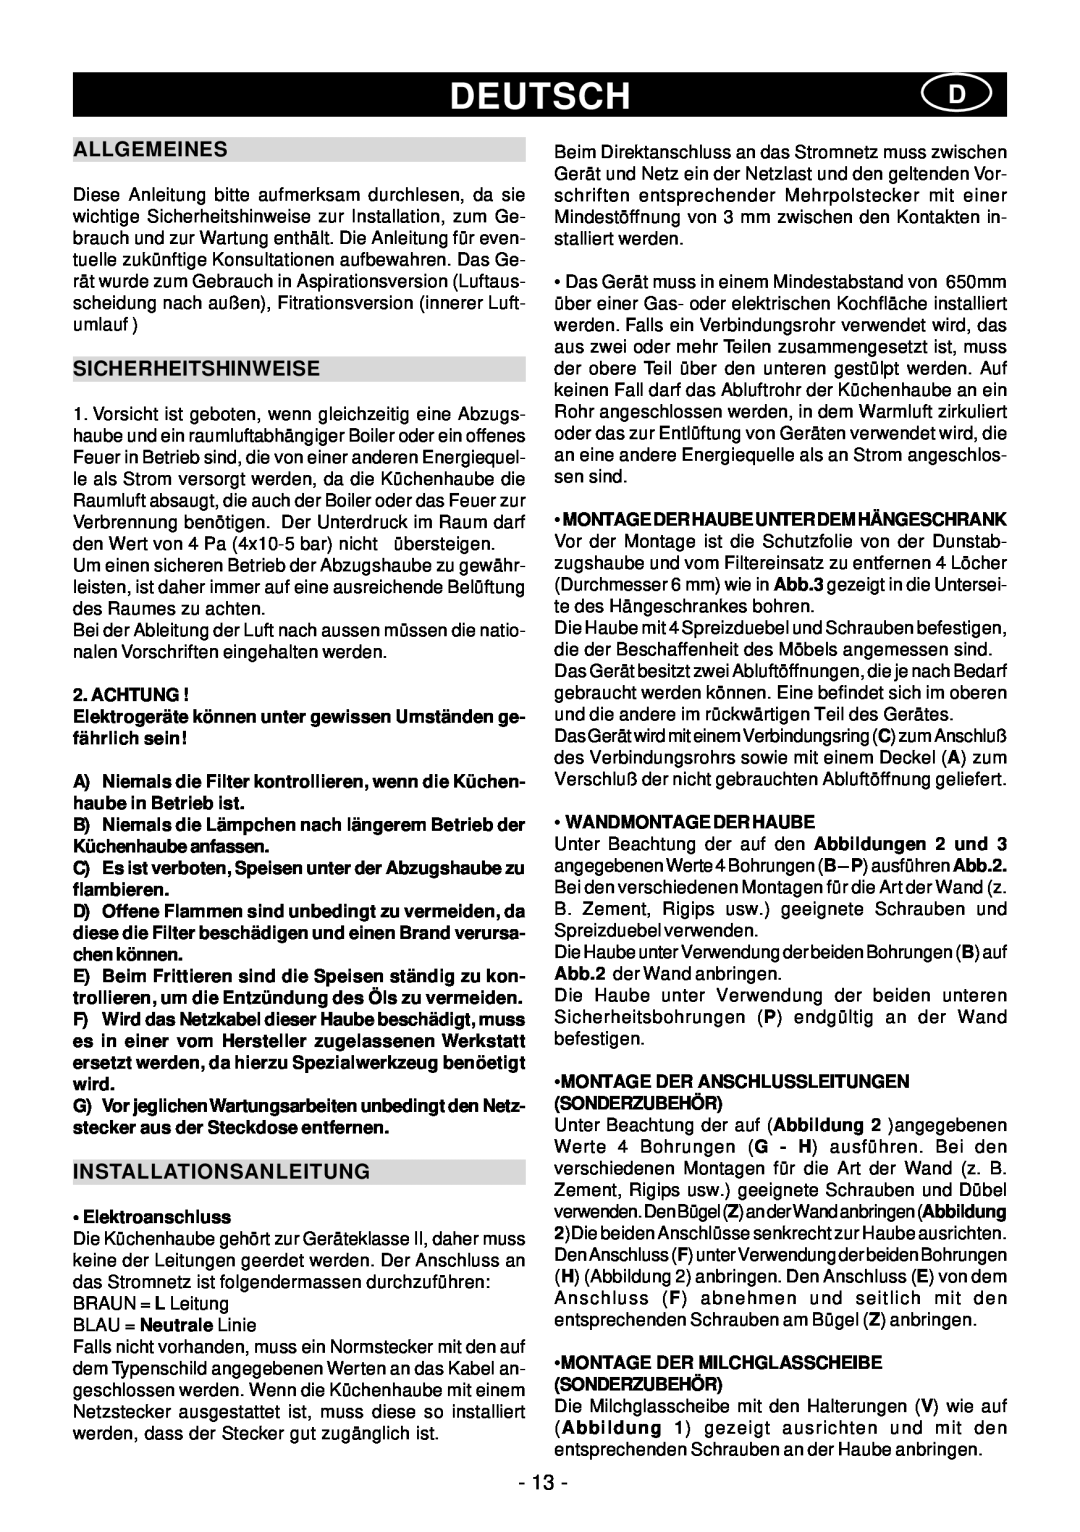 Elitair PN-36 manual Deutschd, Allgemeines, Sicherheitshinweise, Installationsanleitung 